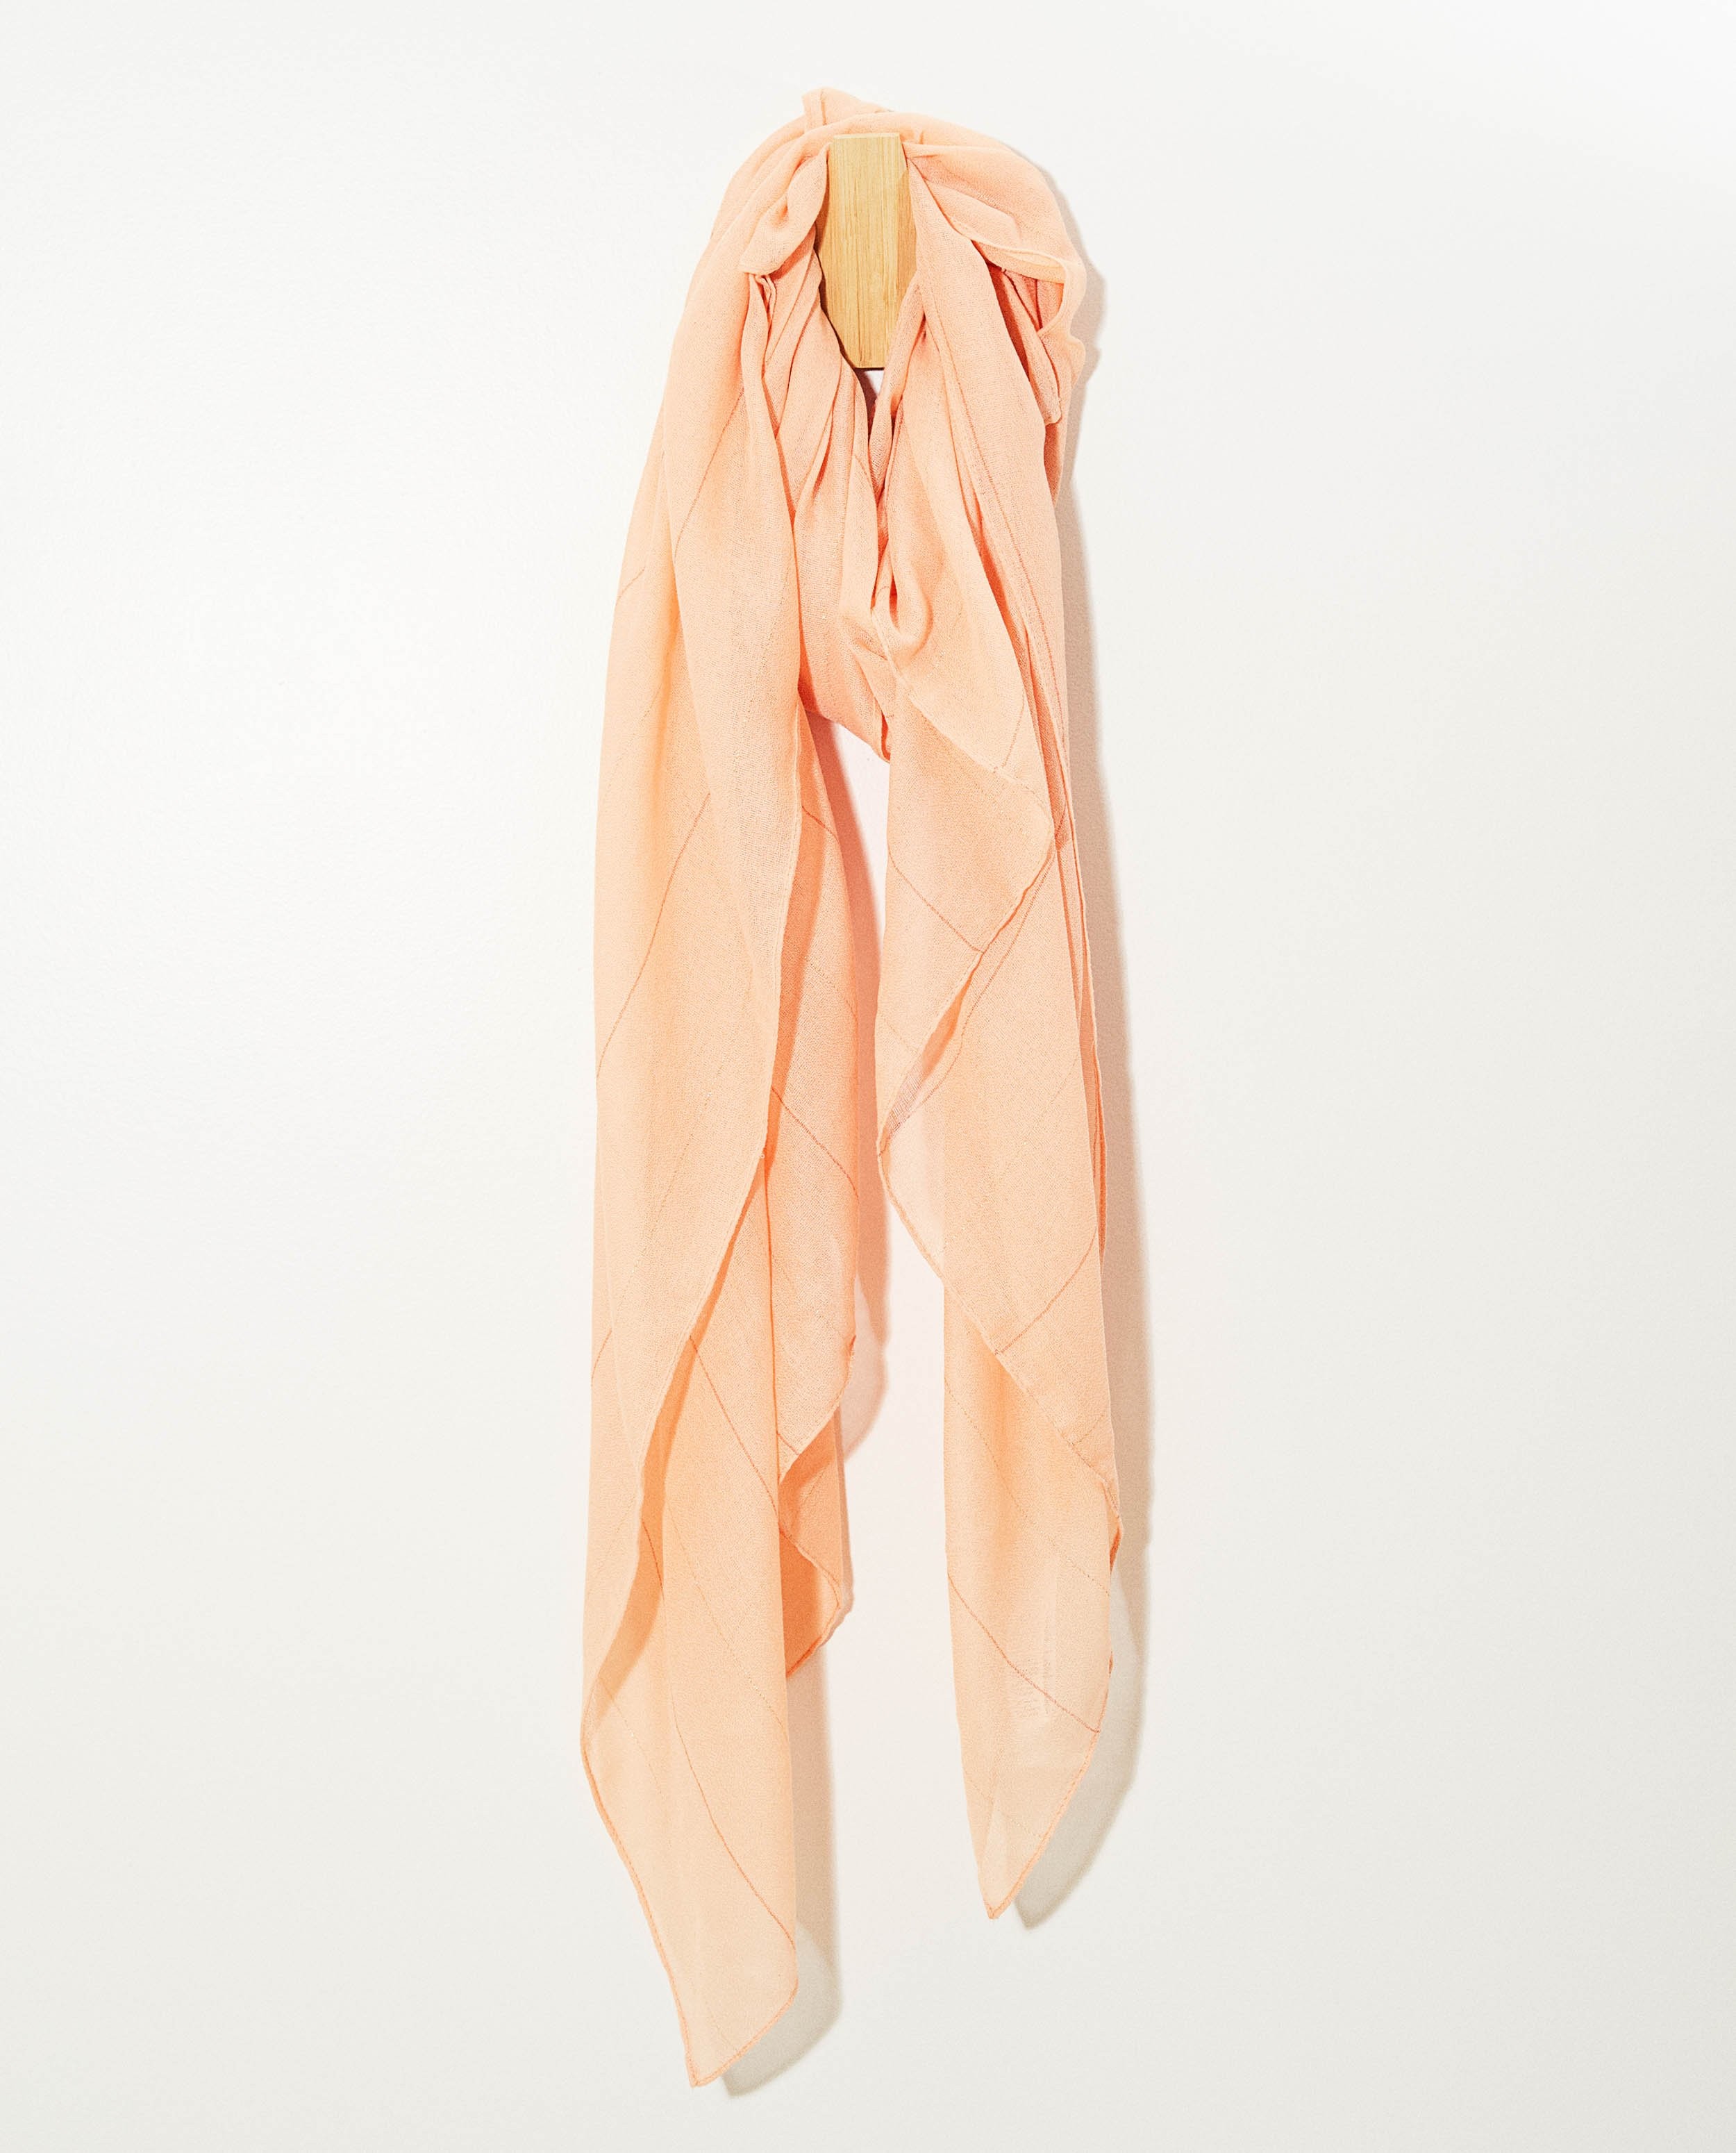 Oranjeroze sjaal met strepen Pieces - met metaaldraad - Pieces